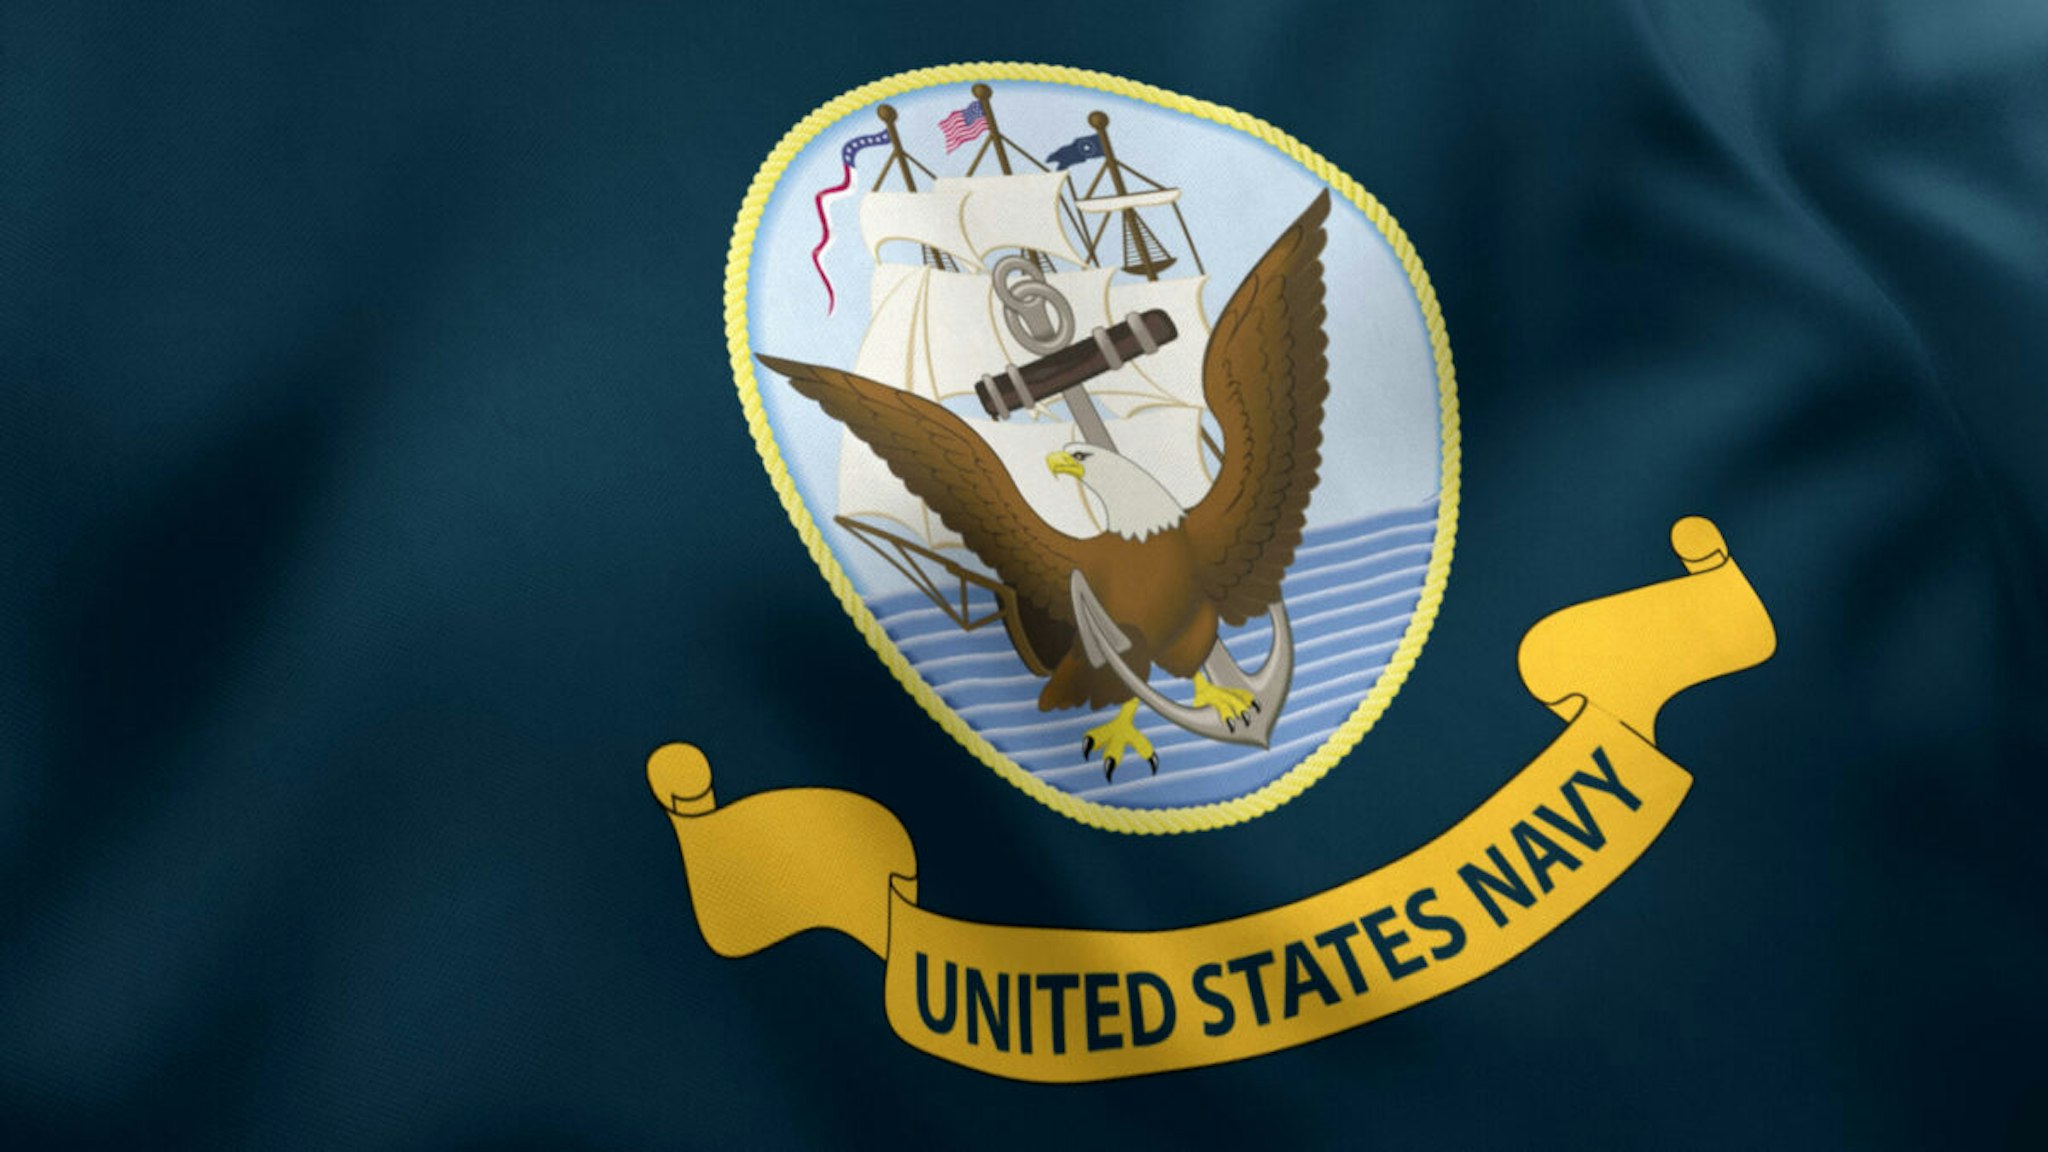 United States Navy Flag, American Navy Flag